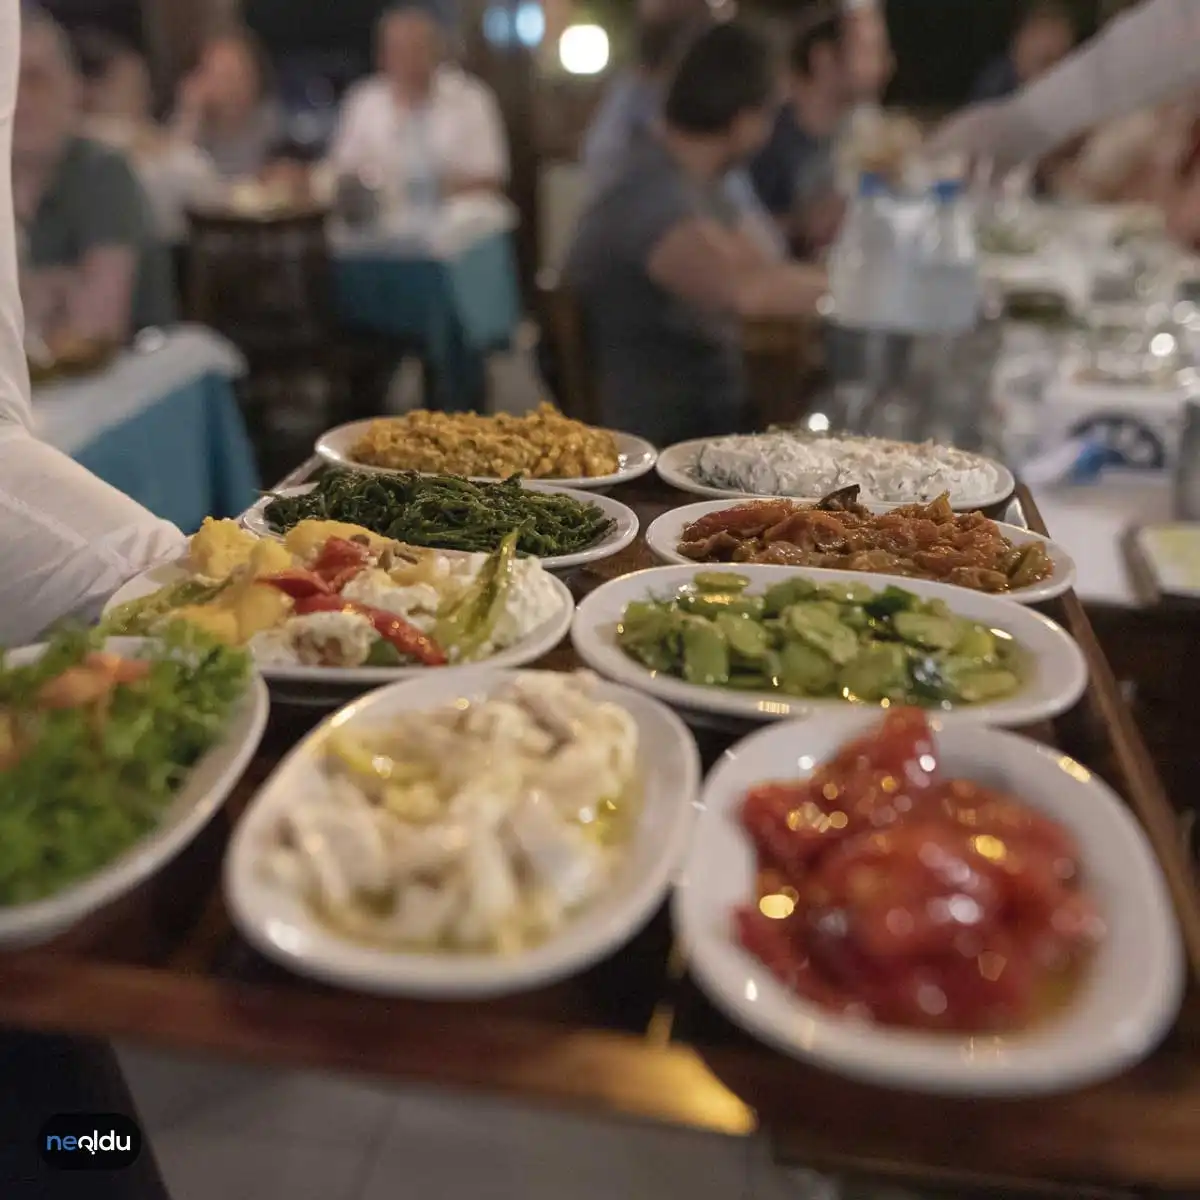 Anadolu Yakası Balık Restoranları